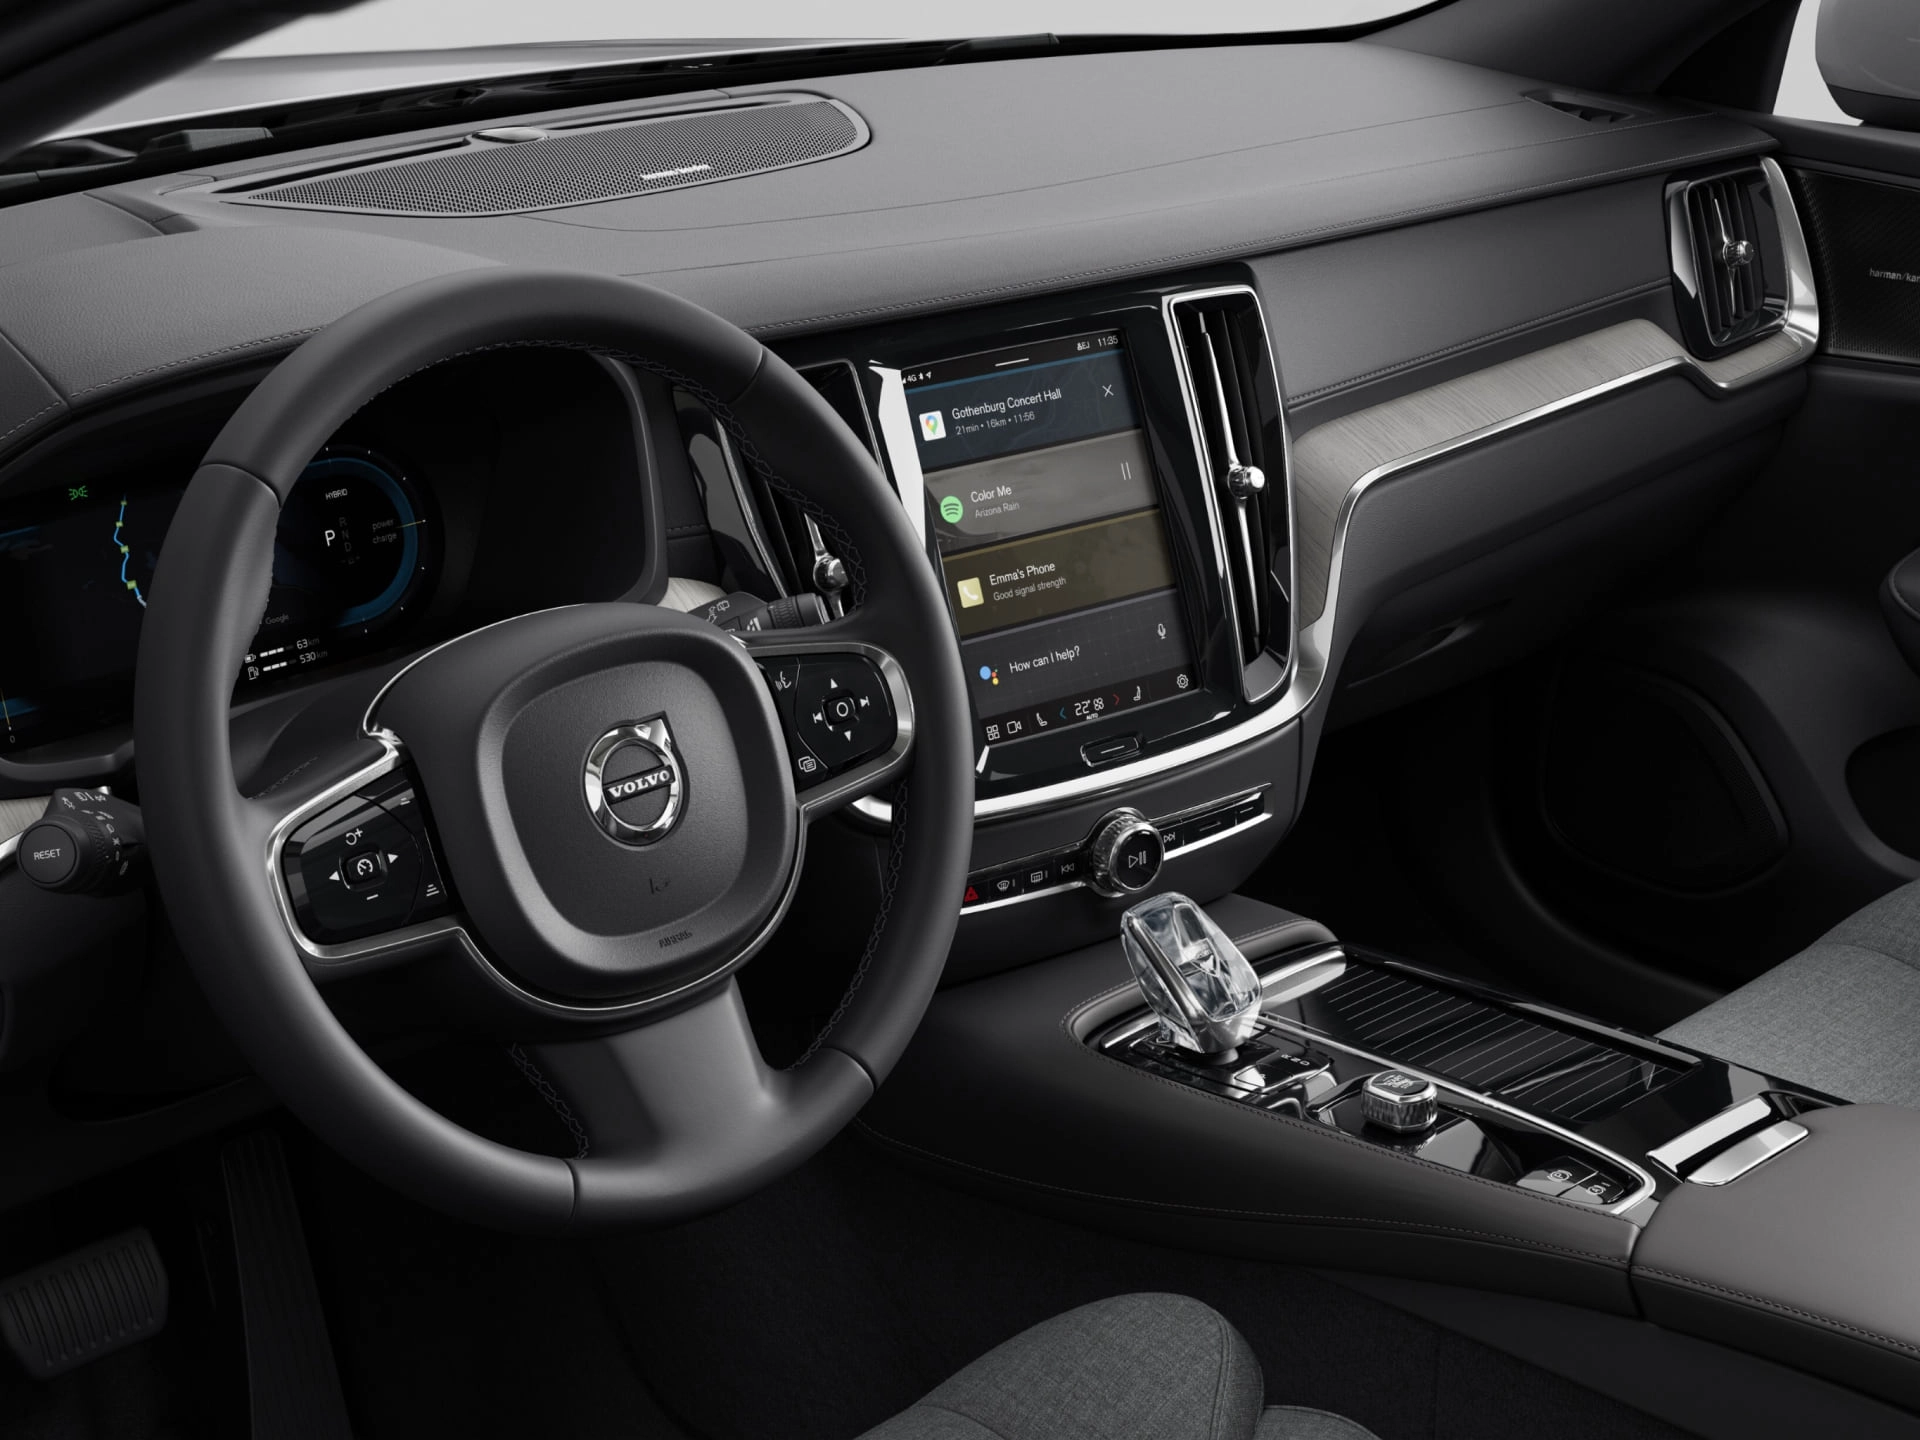 Крупный план водительского сиденья, рулевого колеса и центрального дисплея в седане Volvo.